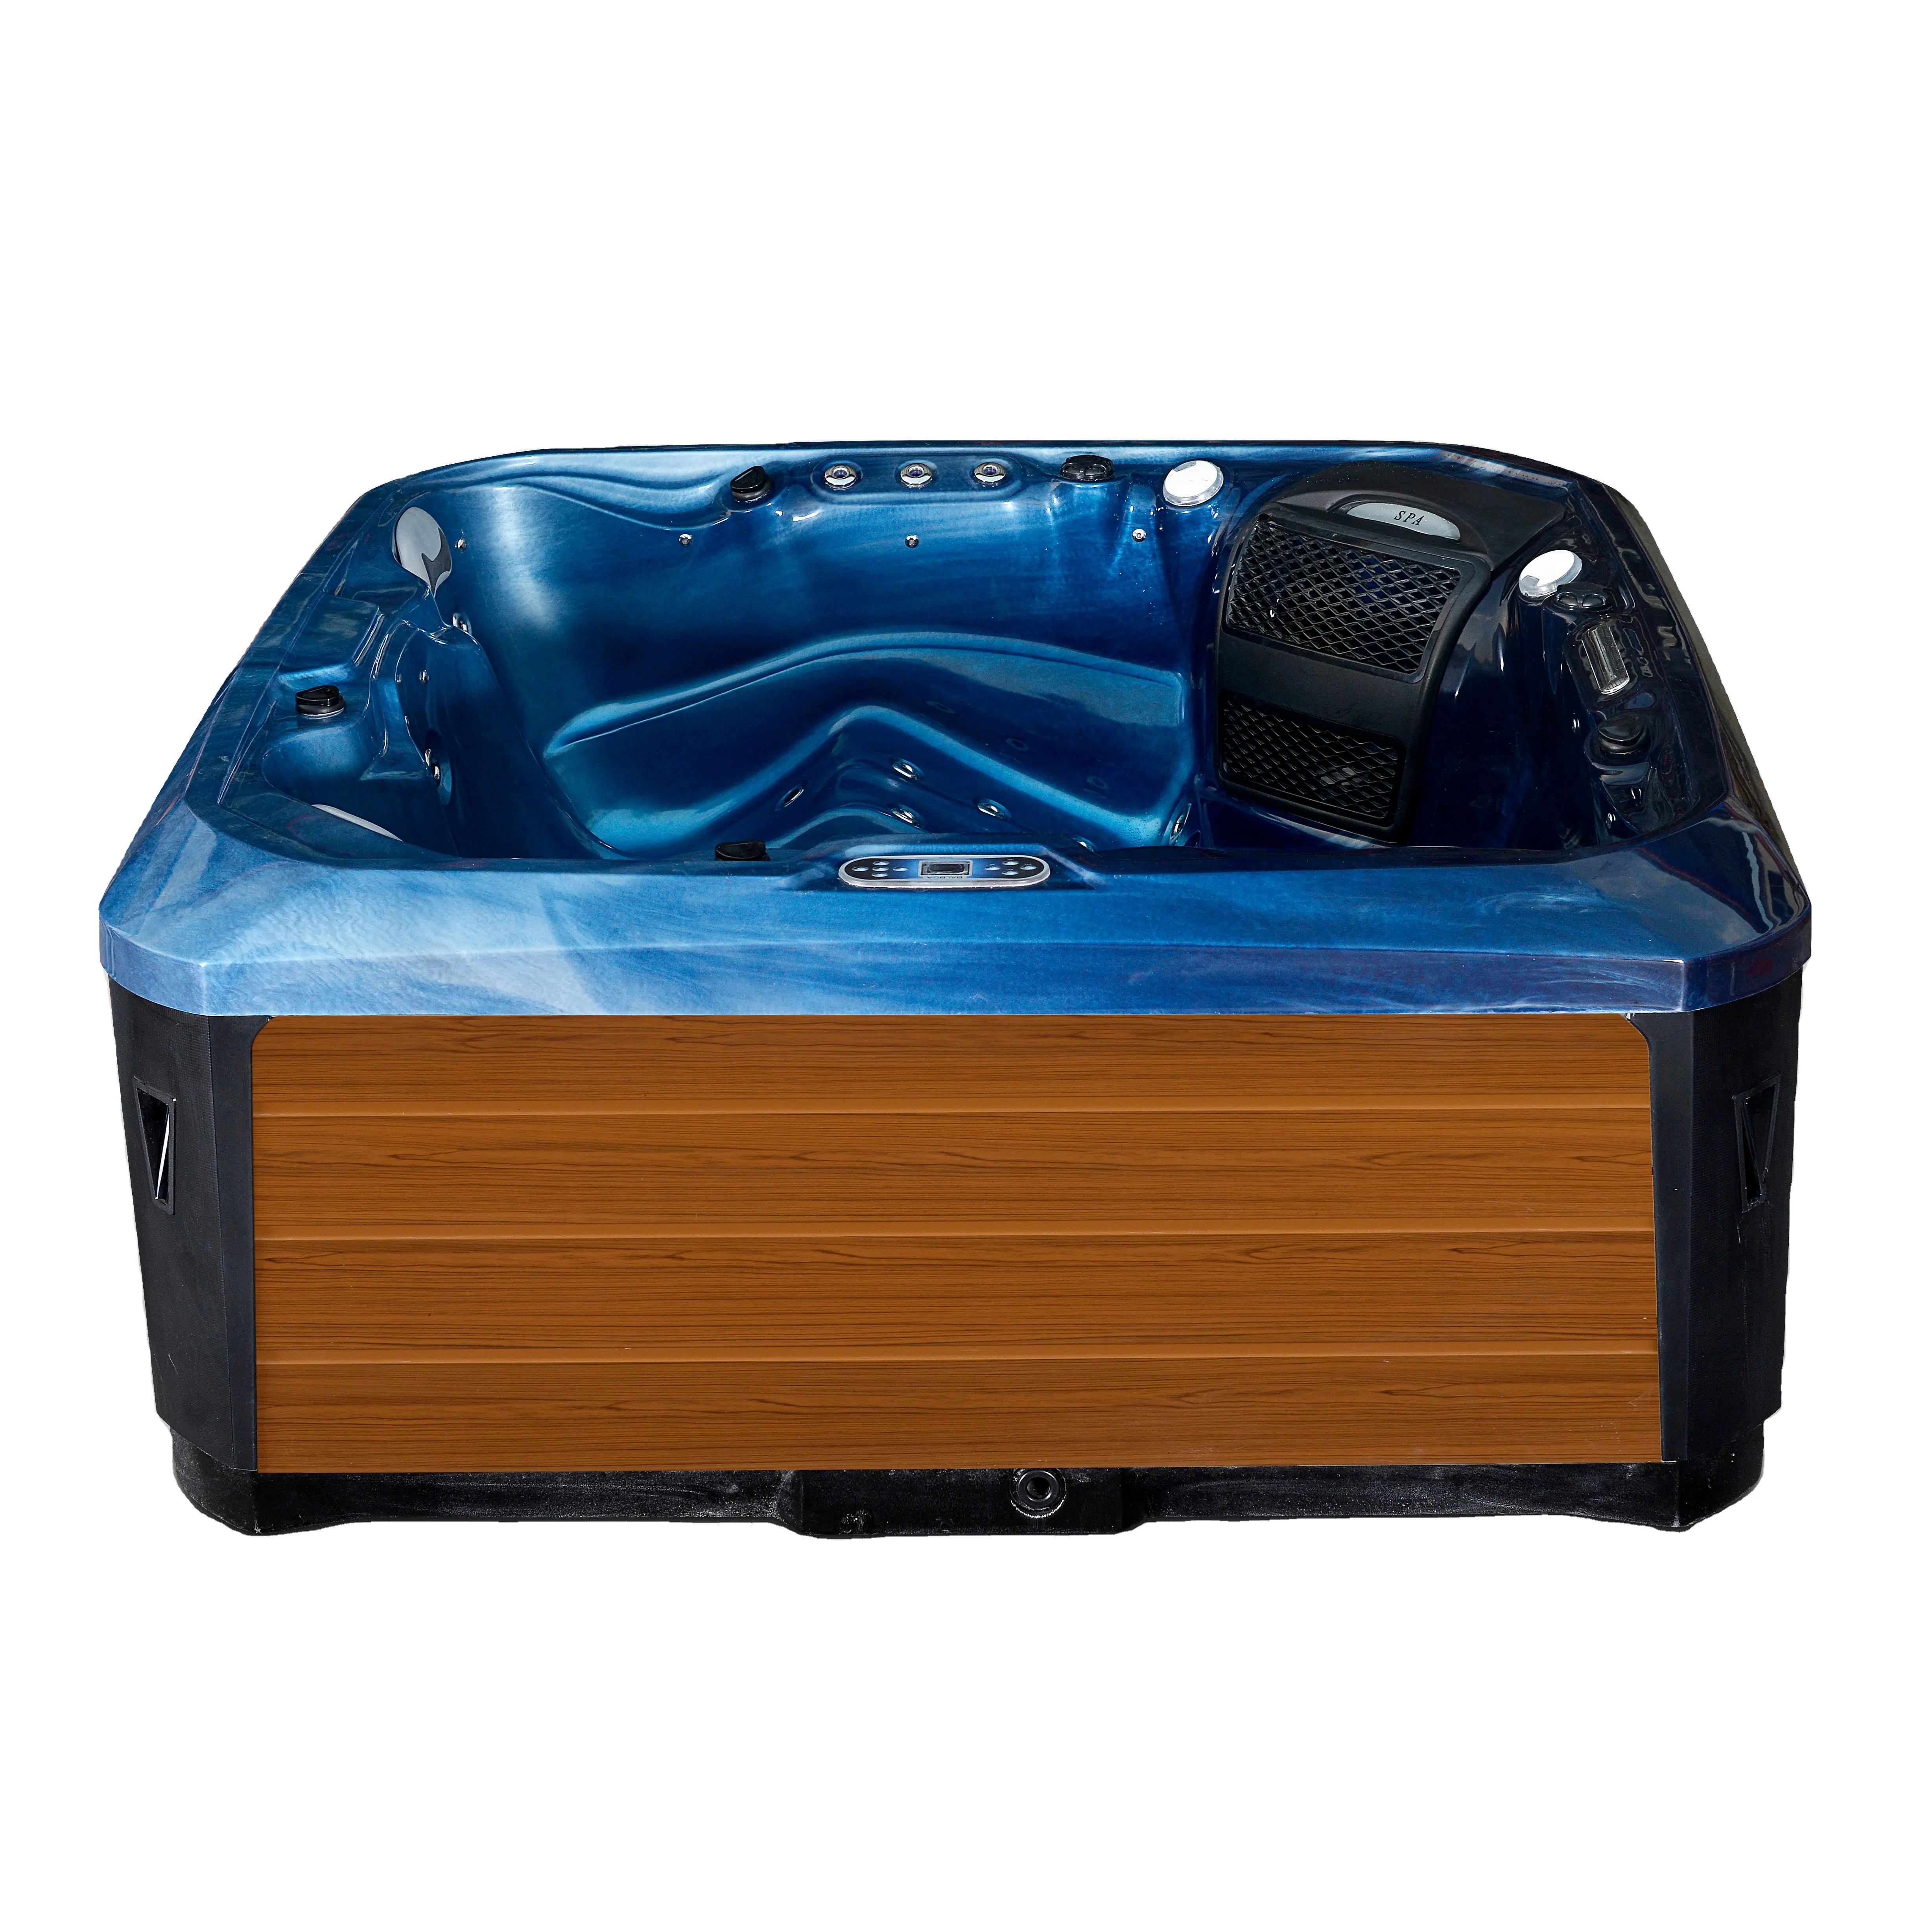 Venta caliente al aire libre jacuzzi 1-5 personas spa bañera de hidromasaje bañera de masaje jakuzzier tubo caliente al aire libre